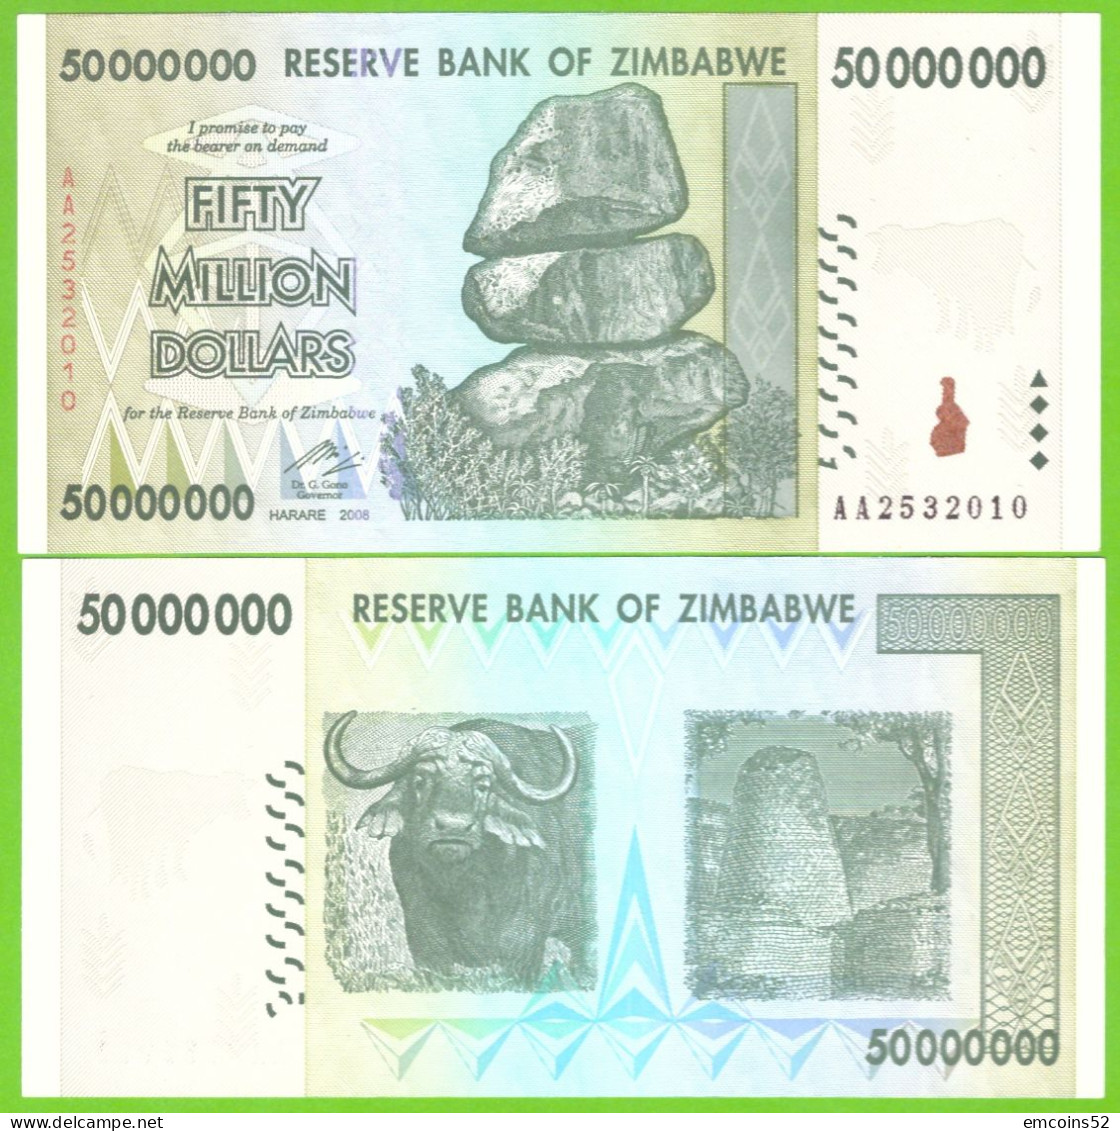 ZIMBABWE 50000000 DOLLARS 2008  P-79 UNC - Zimbabwe